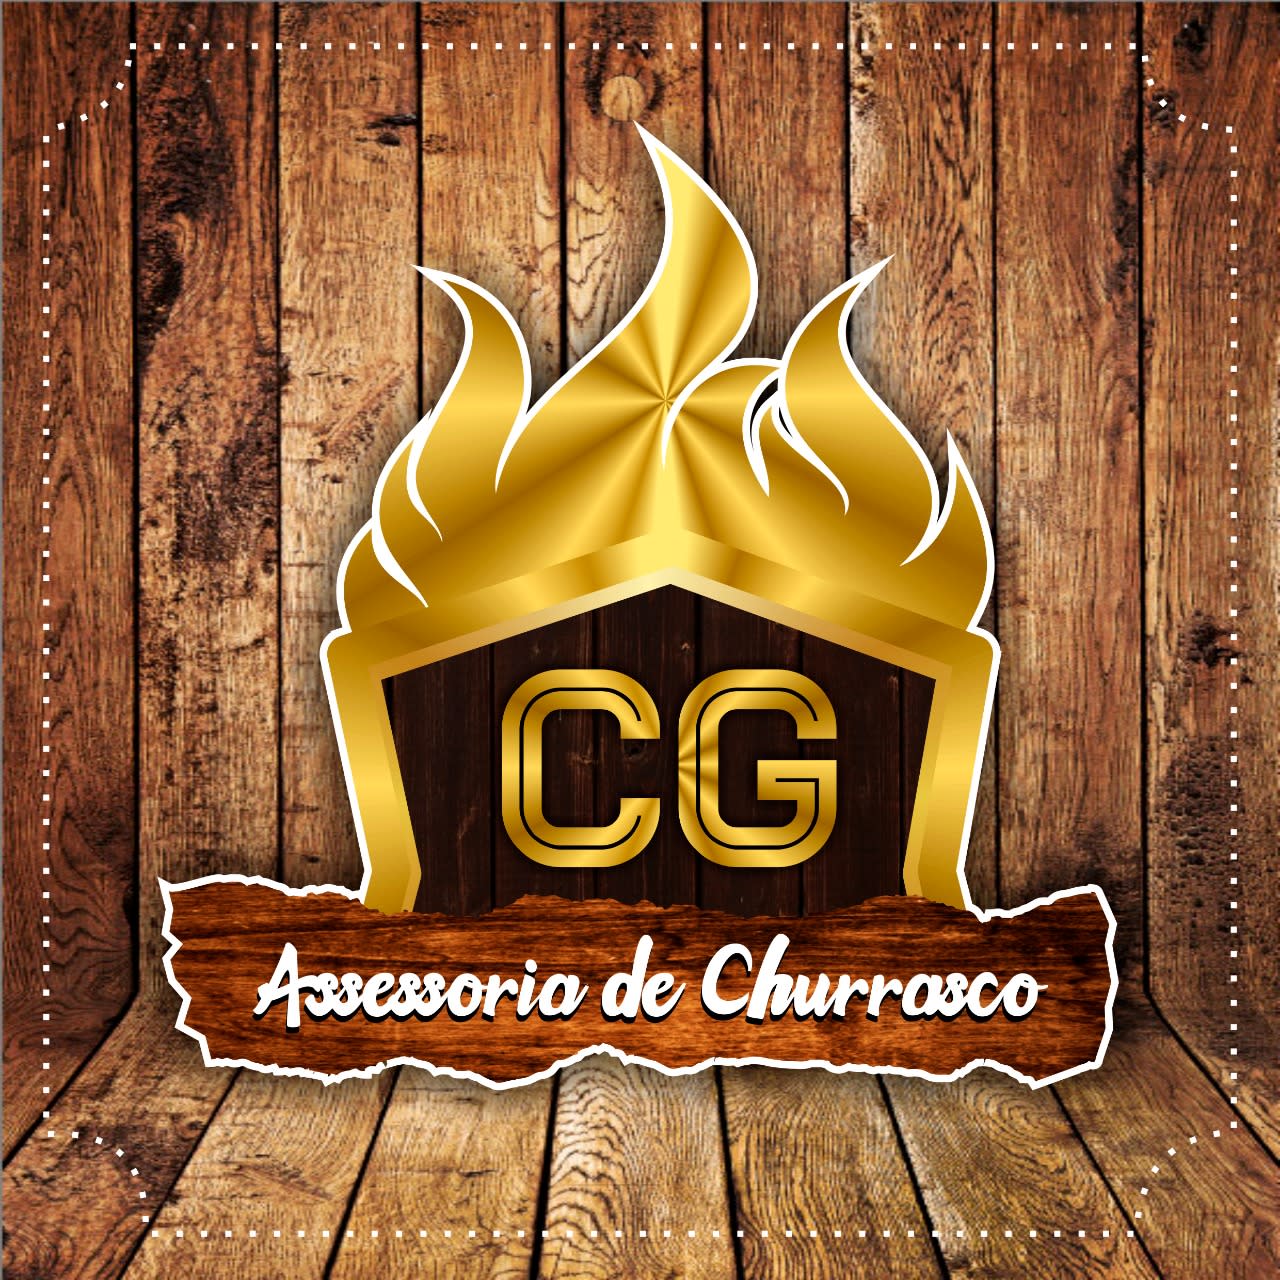 CG Assessoria de Churrasco